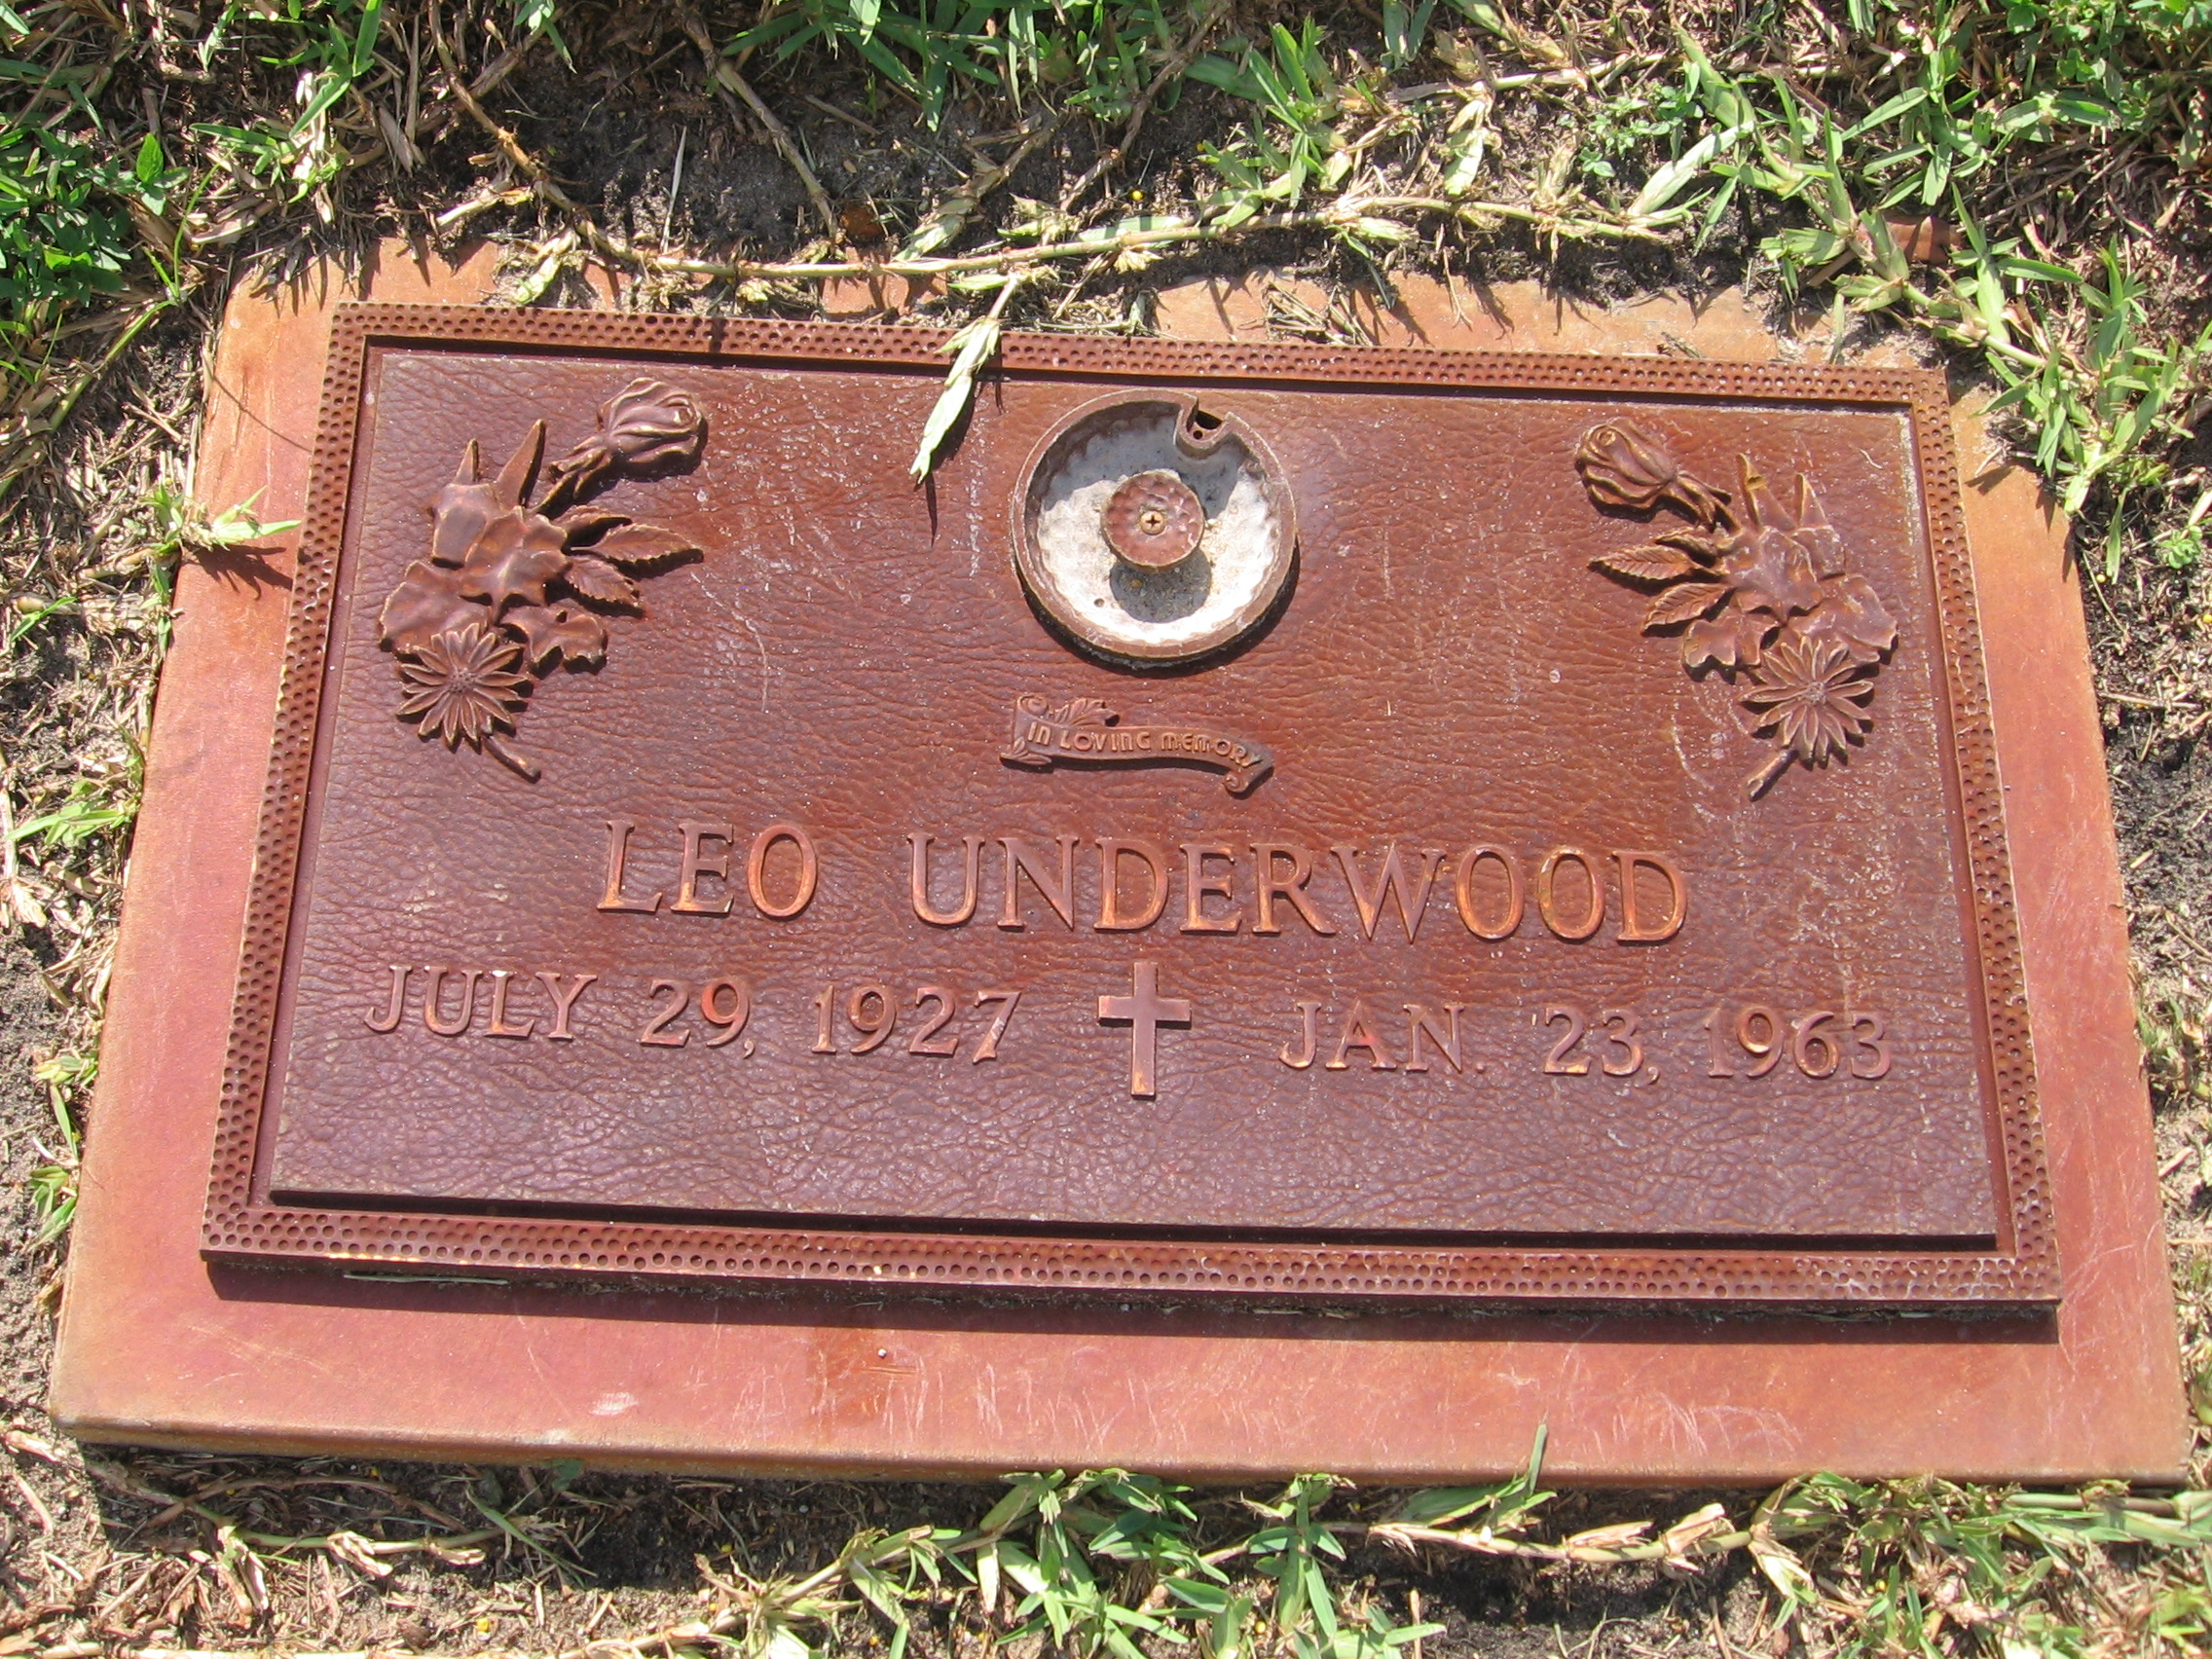 Leo Underwood